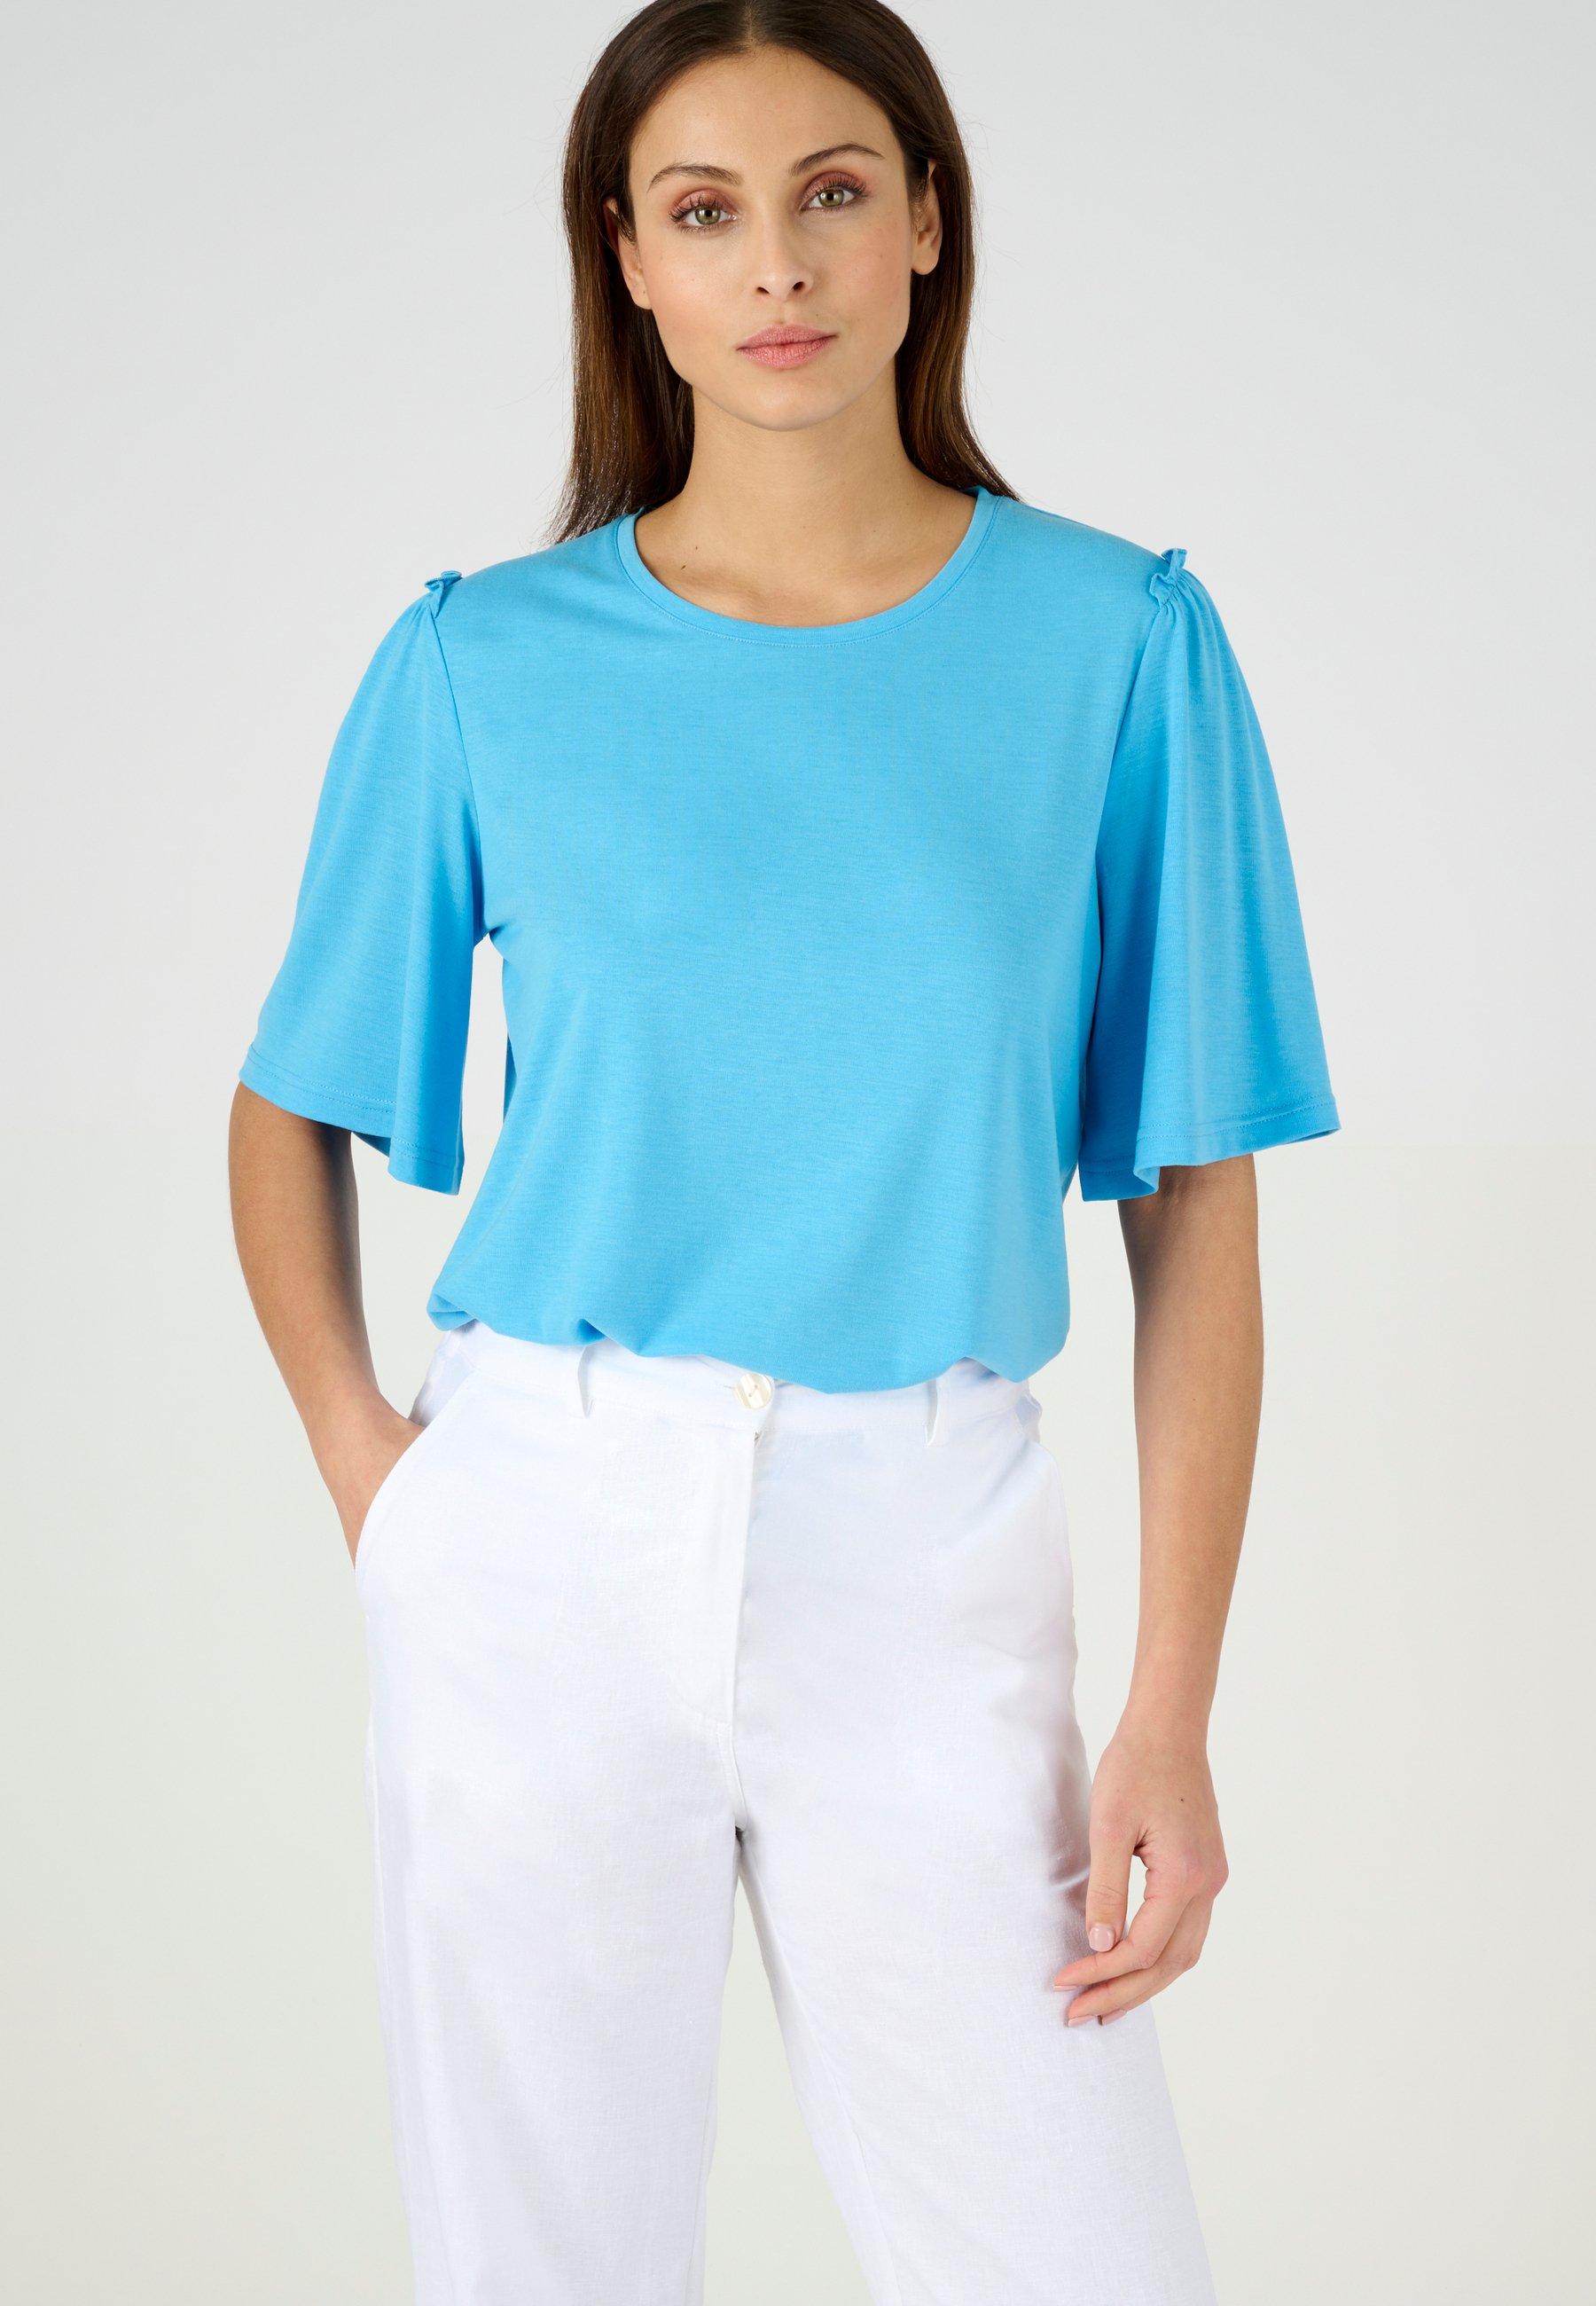 Climatyl-t-shirt. Damen Blau 34/36 von Damart